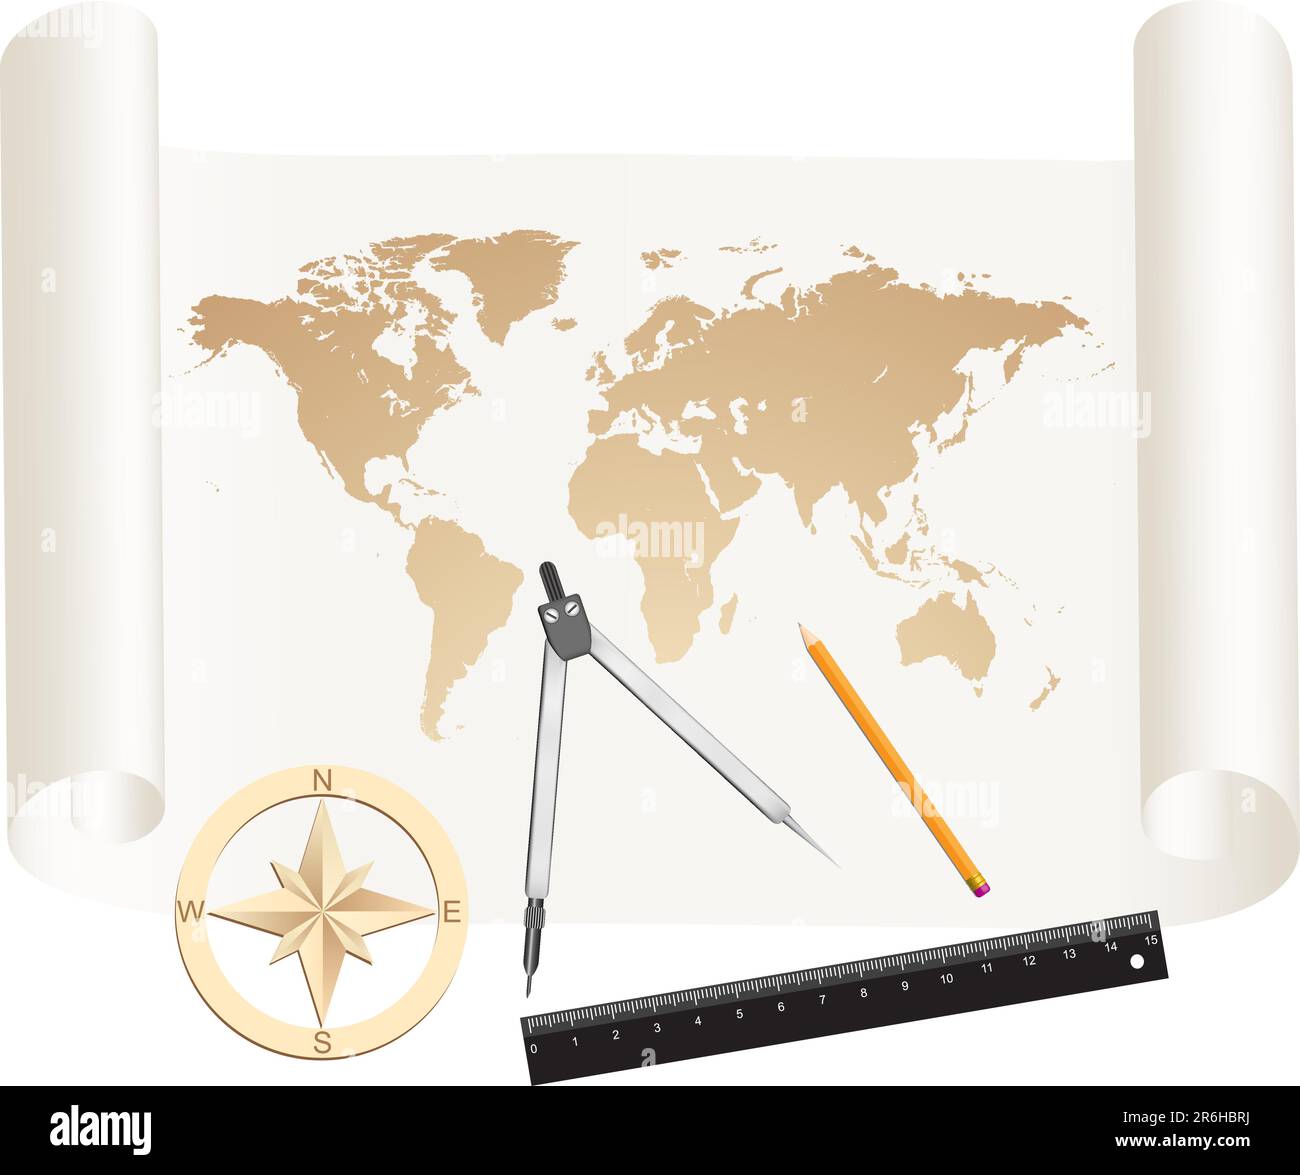 Messwerkzeuge ein Kompass, ein Bleistift und ein Lineal liegen auf einer Papierrolle mit Weltkarte-Zeichnung Stock Vektor